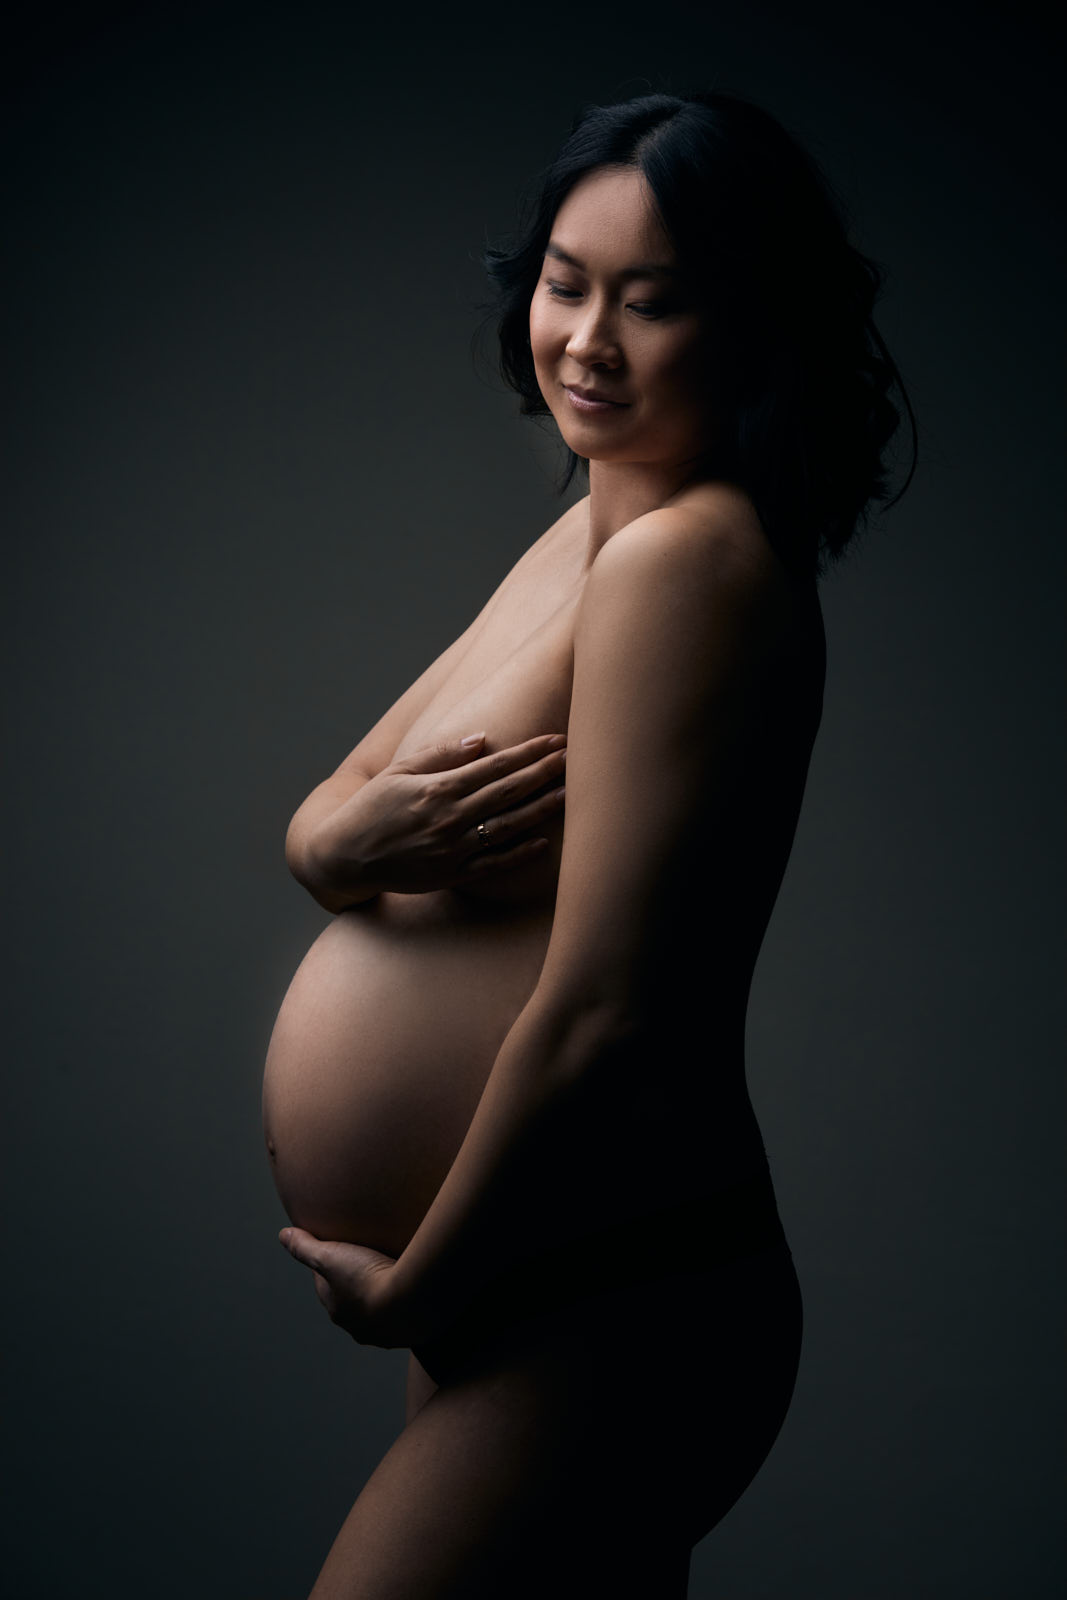 Babybauchfoto einer asiatisch aussehnden Frau mit schwarzen Haaren, die nackt seitlich steht und Ihre Brüste und Bauch mit den Händen bedeckt